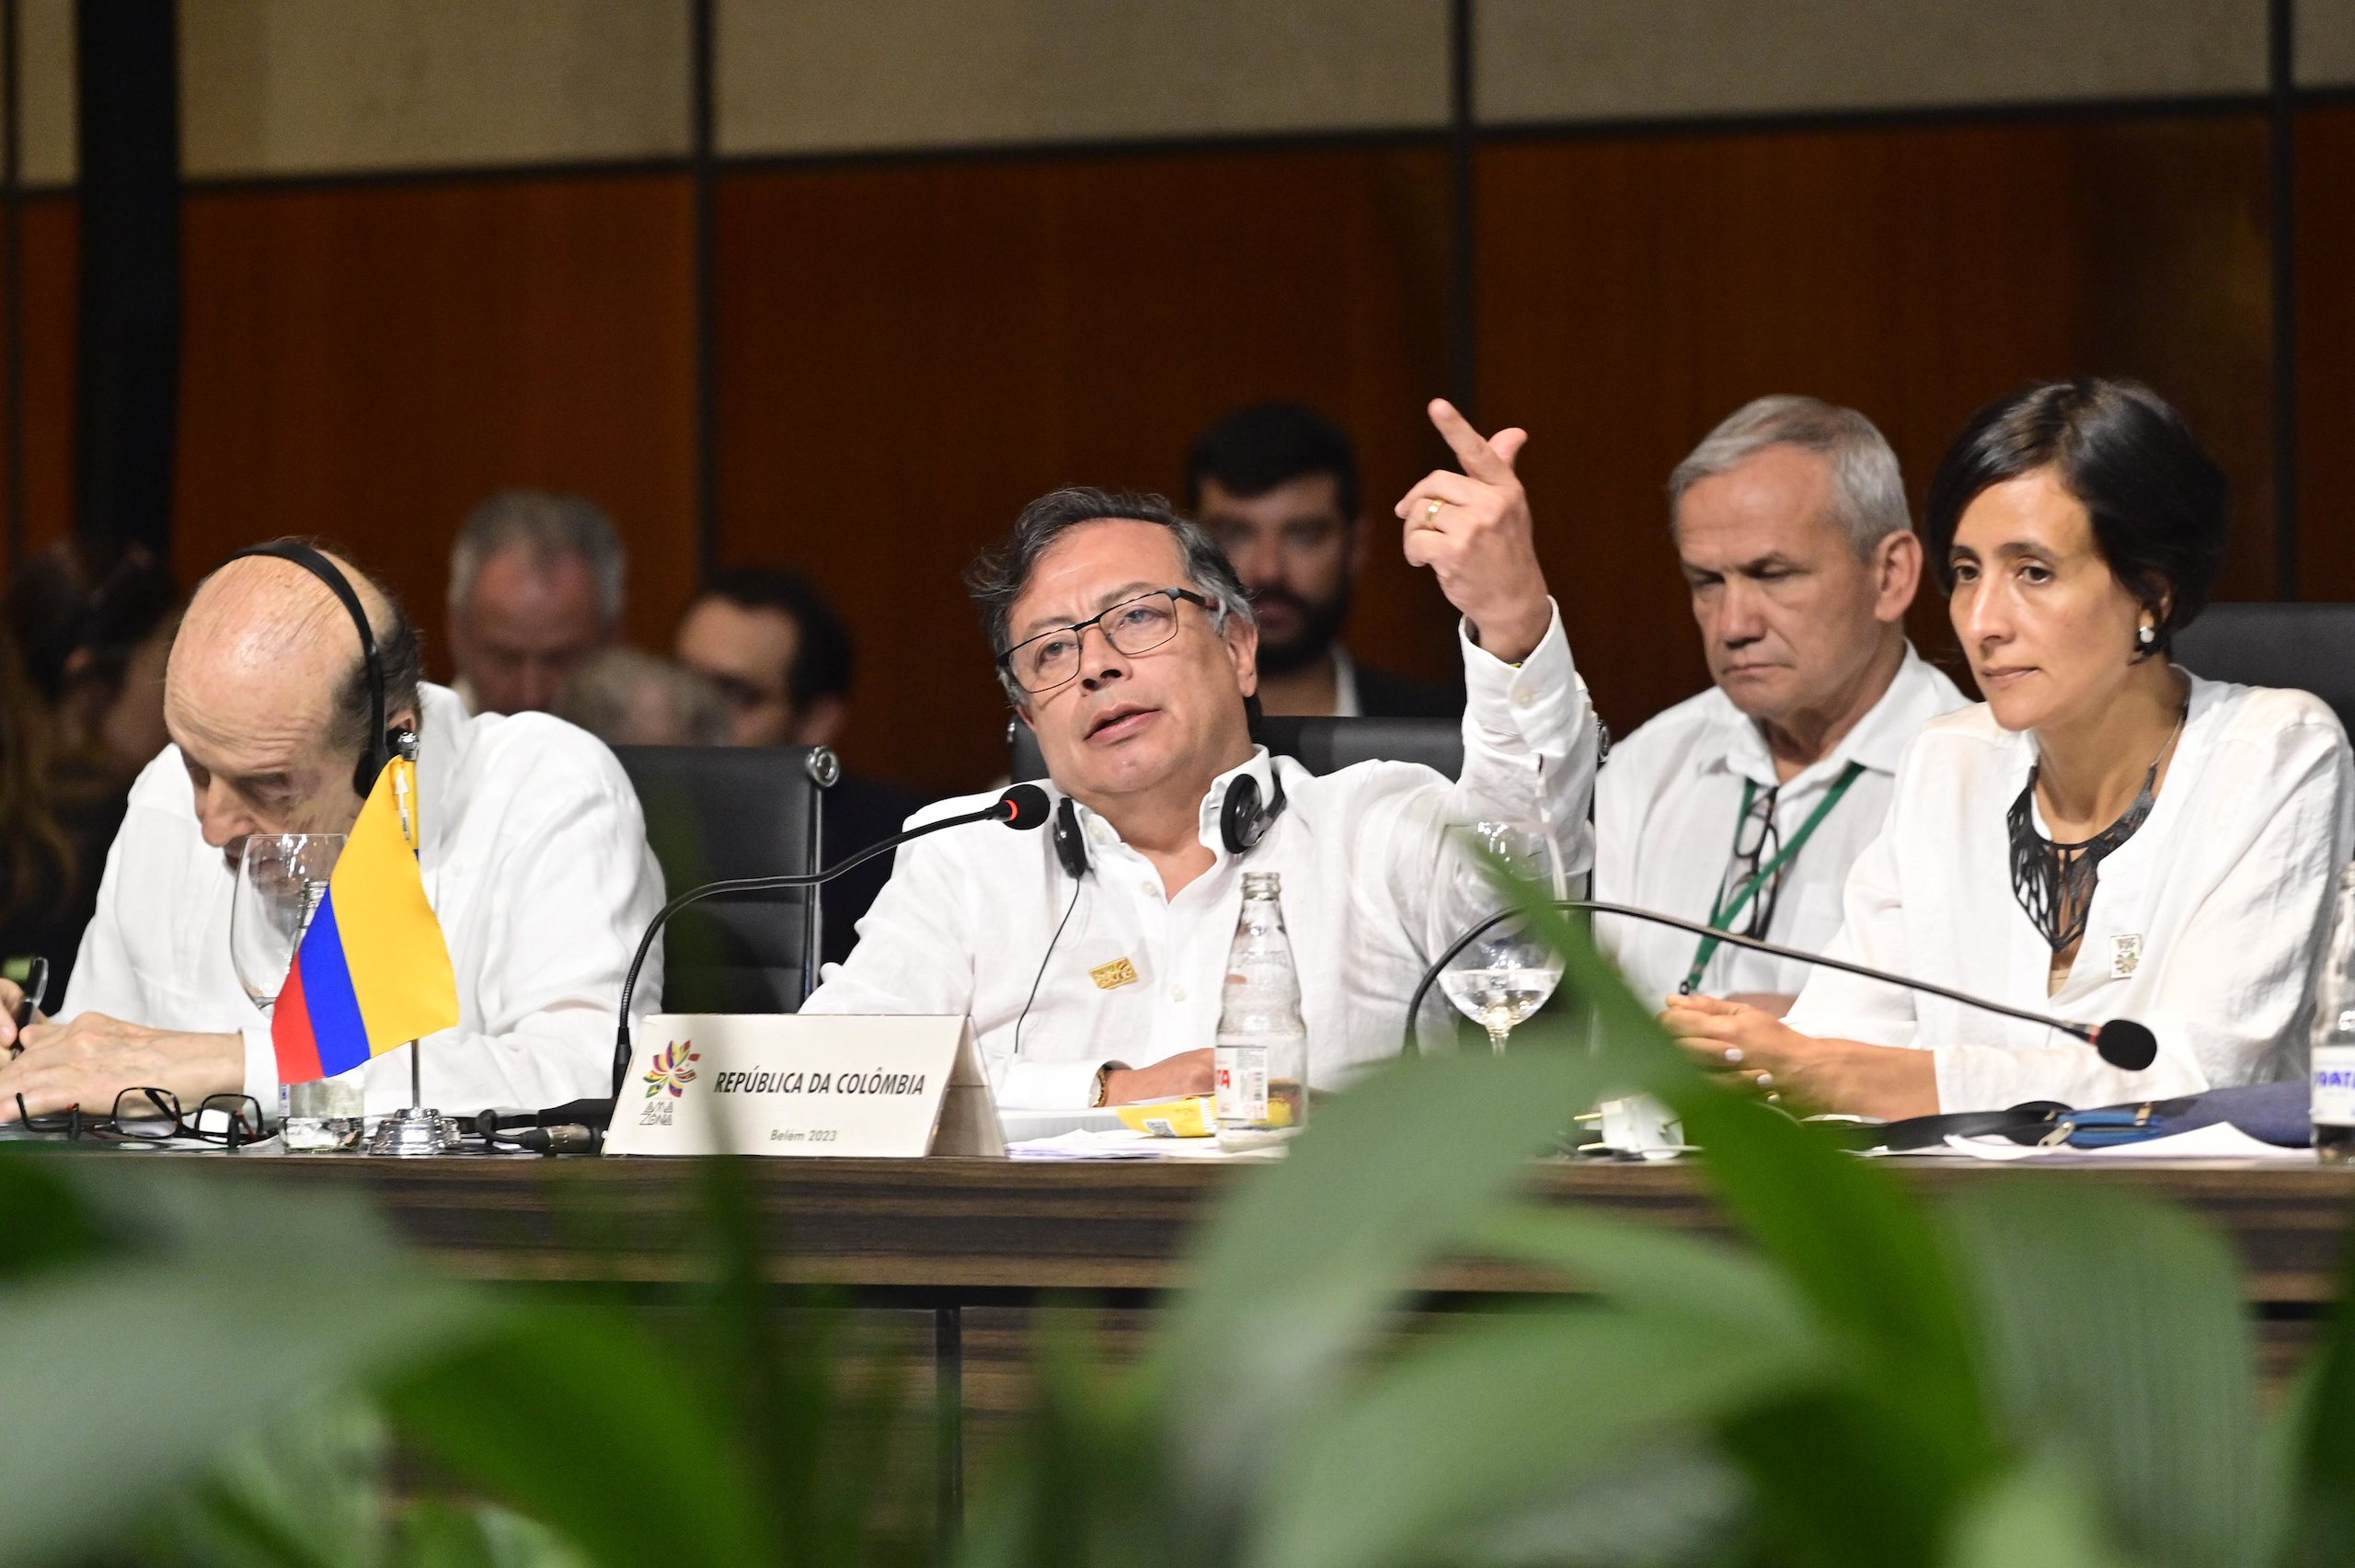 El presidente de Colombia Gustavo Petro hablando en una reunión